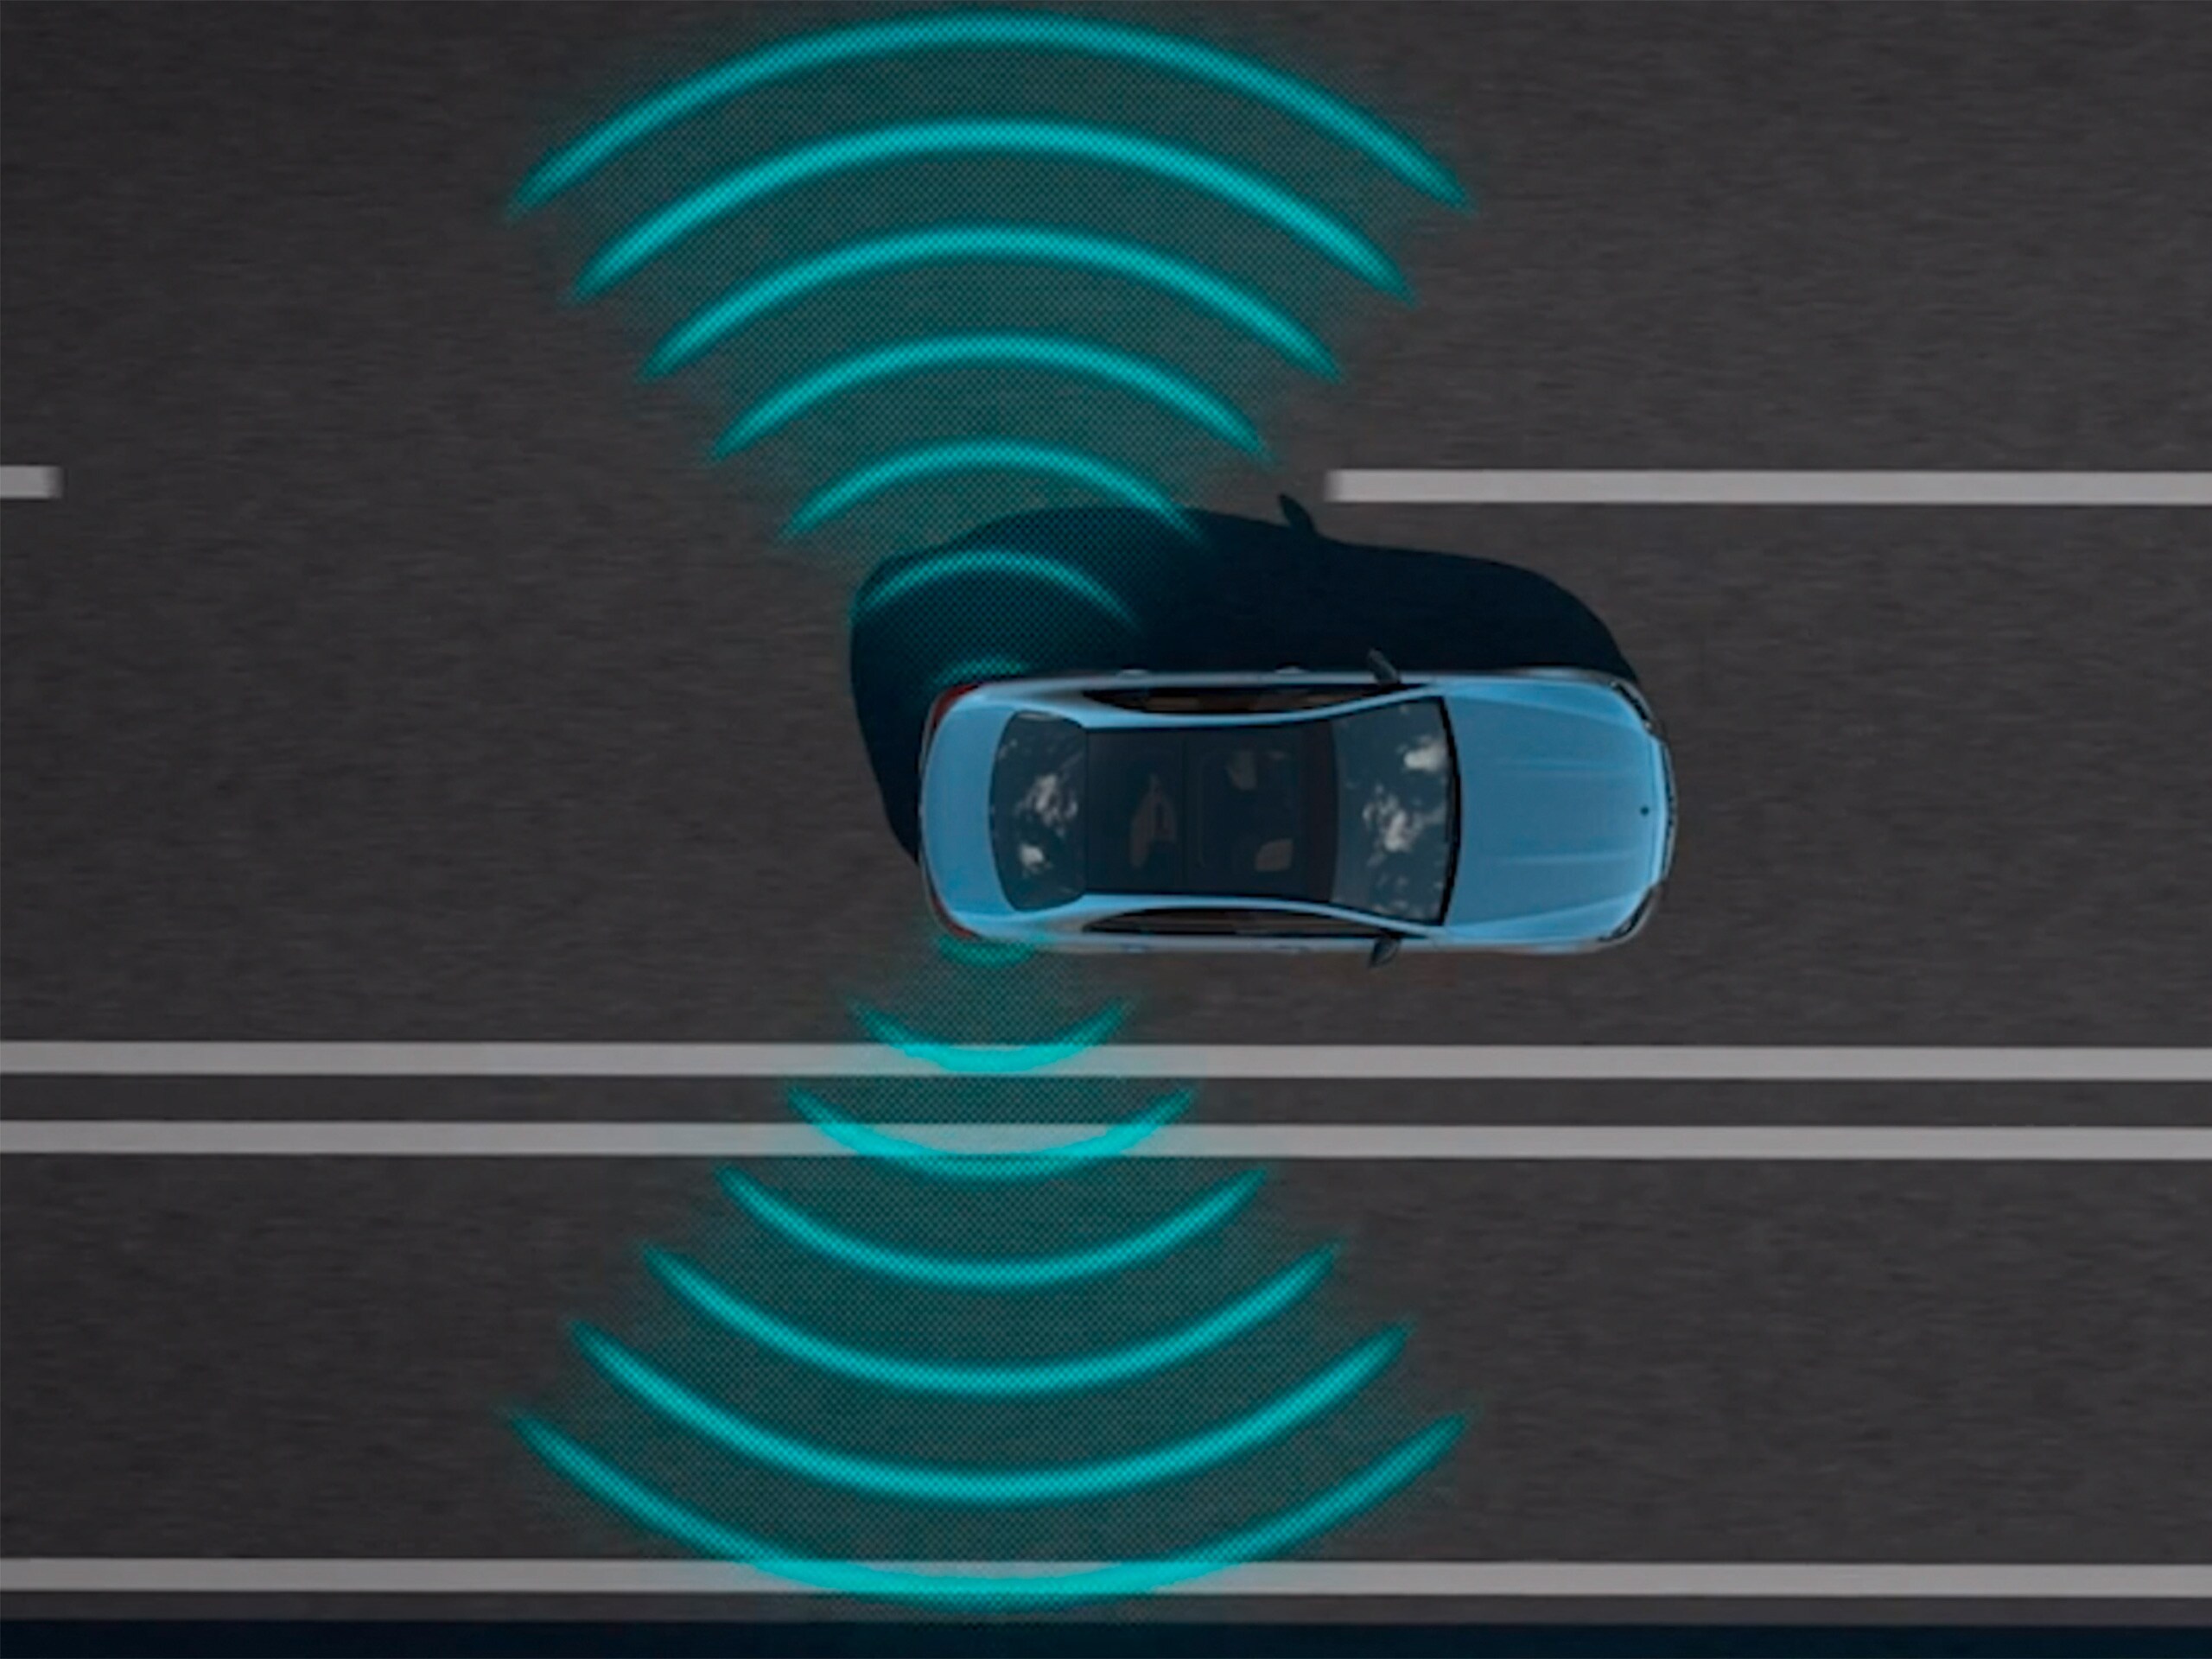 Videoda, Mercedes-Benz CLS Coupé'deki aktif kör nokta yardımcısının fonksiyonları gösterilmektedir.